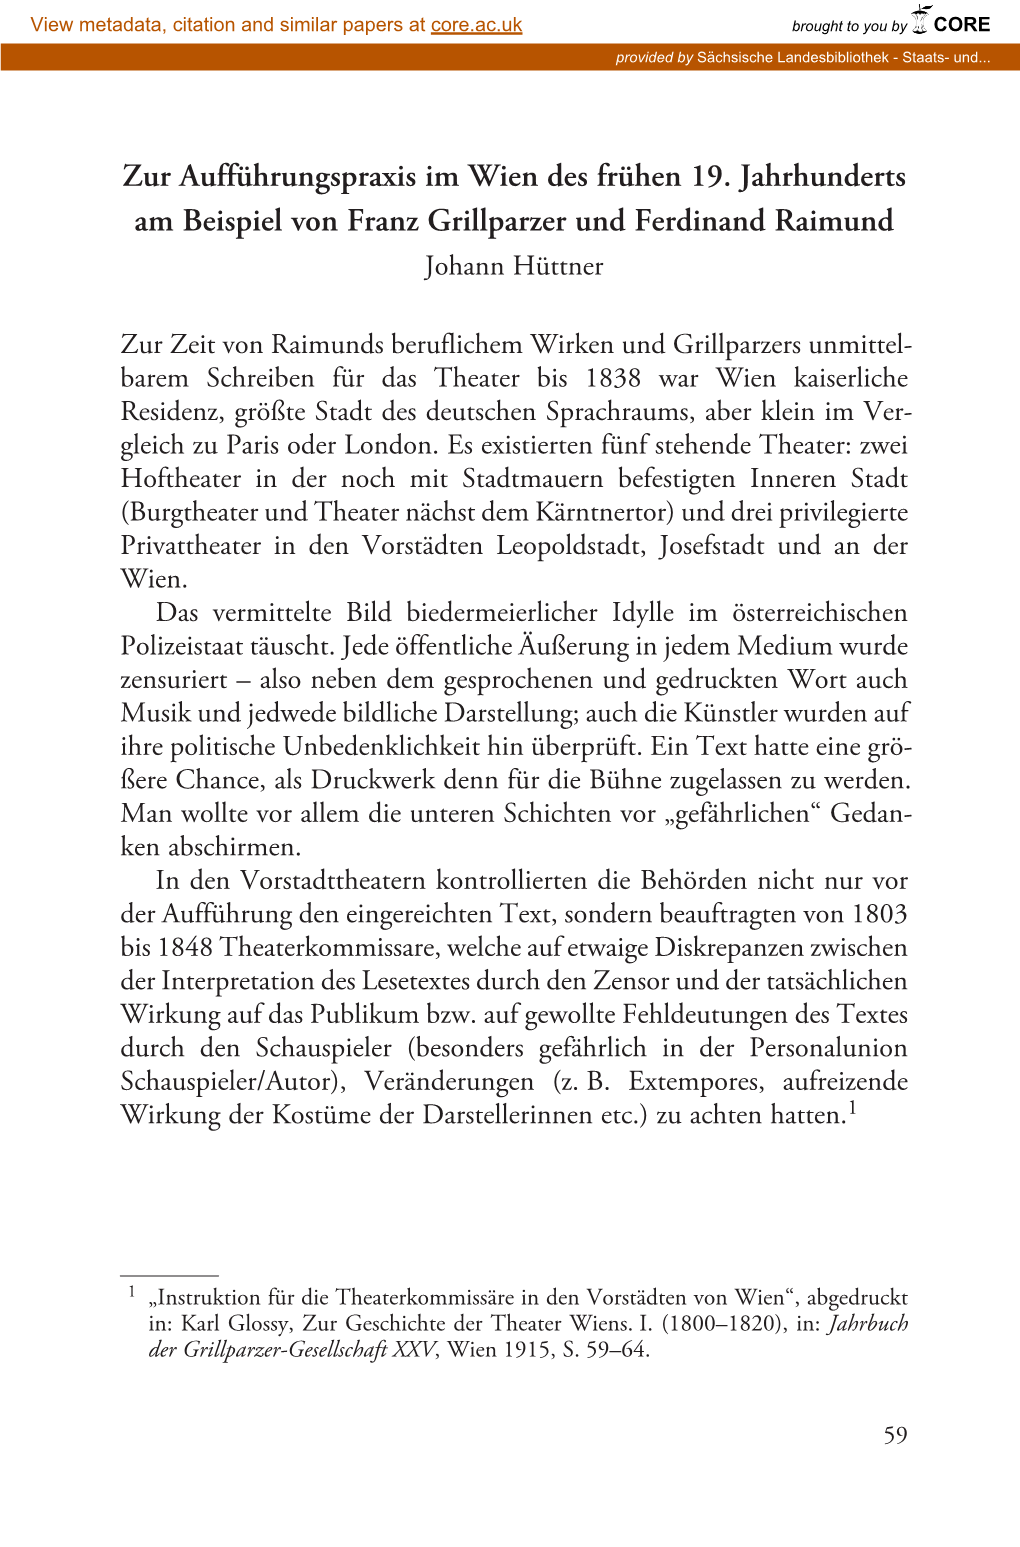 Theaterprojekt 090505:Felix Mendelssohn Bartholdy